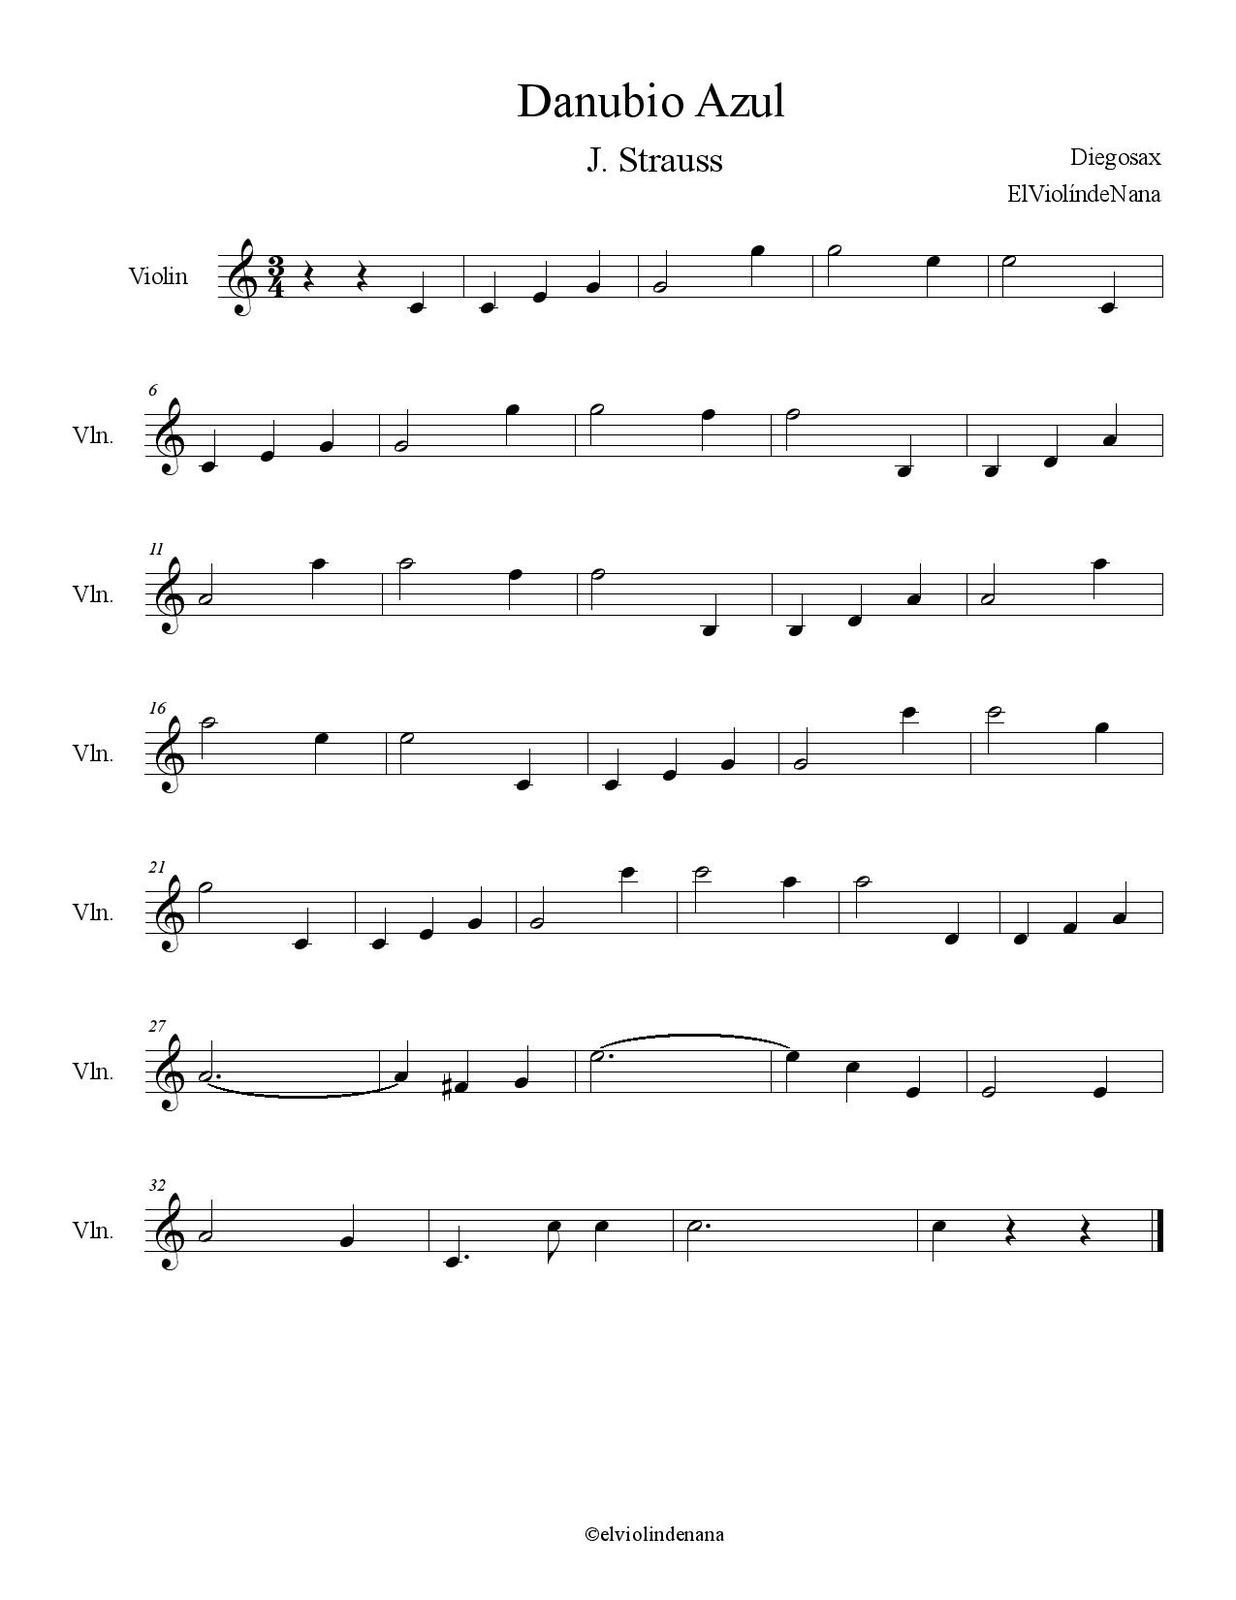 Partitura de la Canción "Danubio Azul" | J. Strauss - Las Notas De Nana